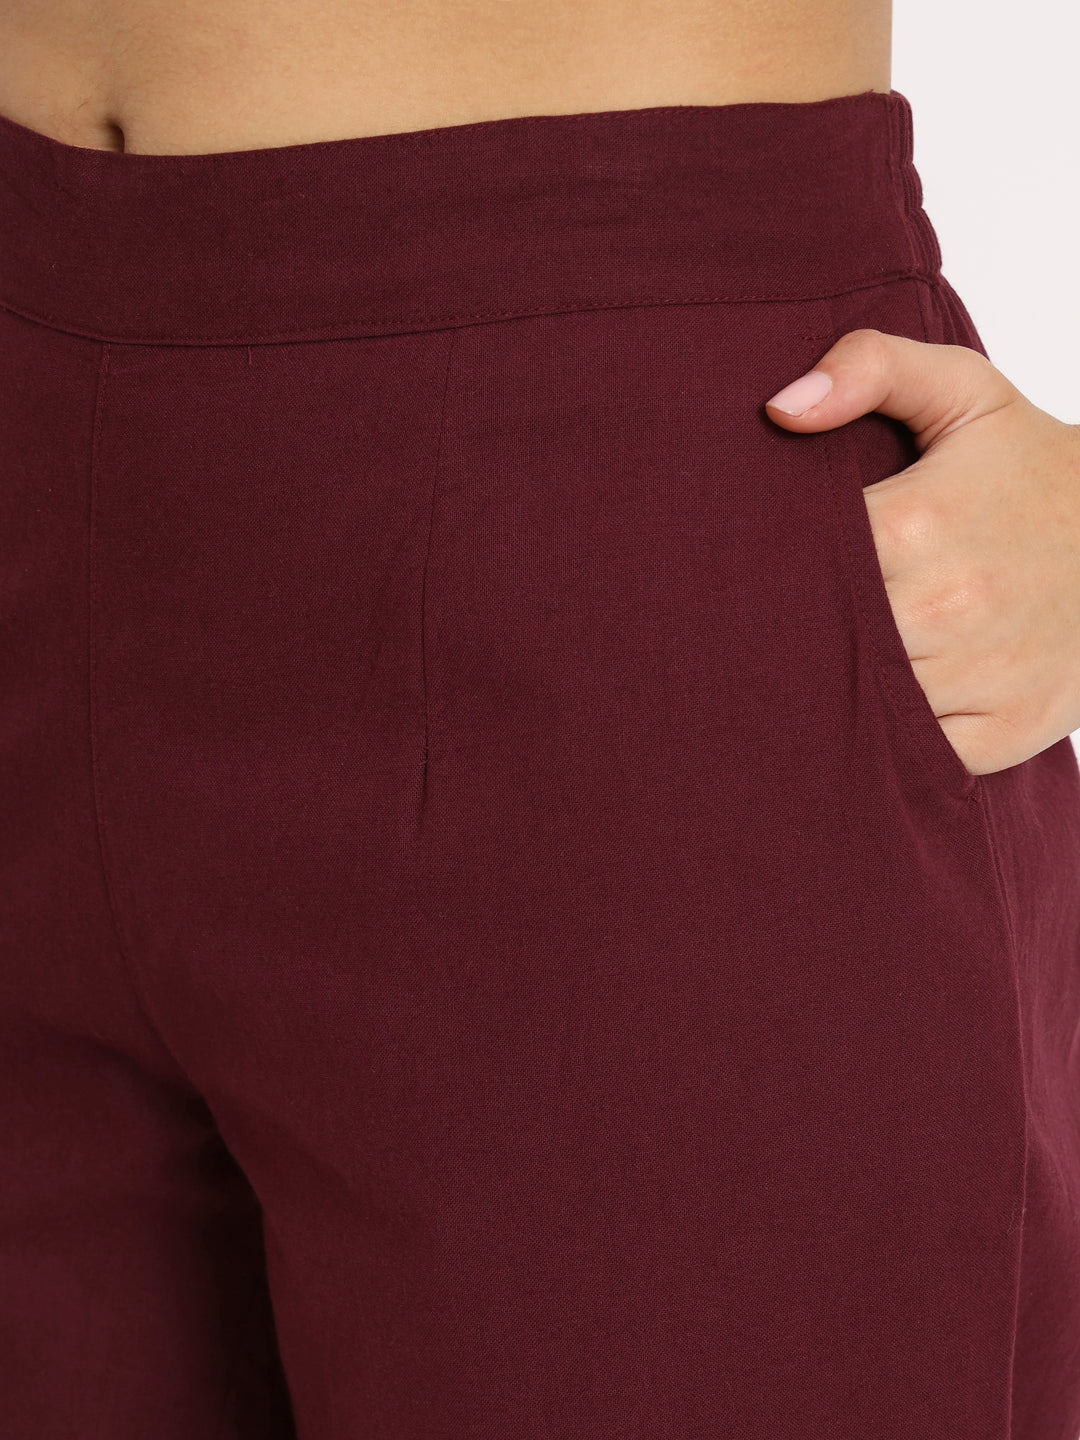 Cotton pants for women